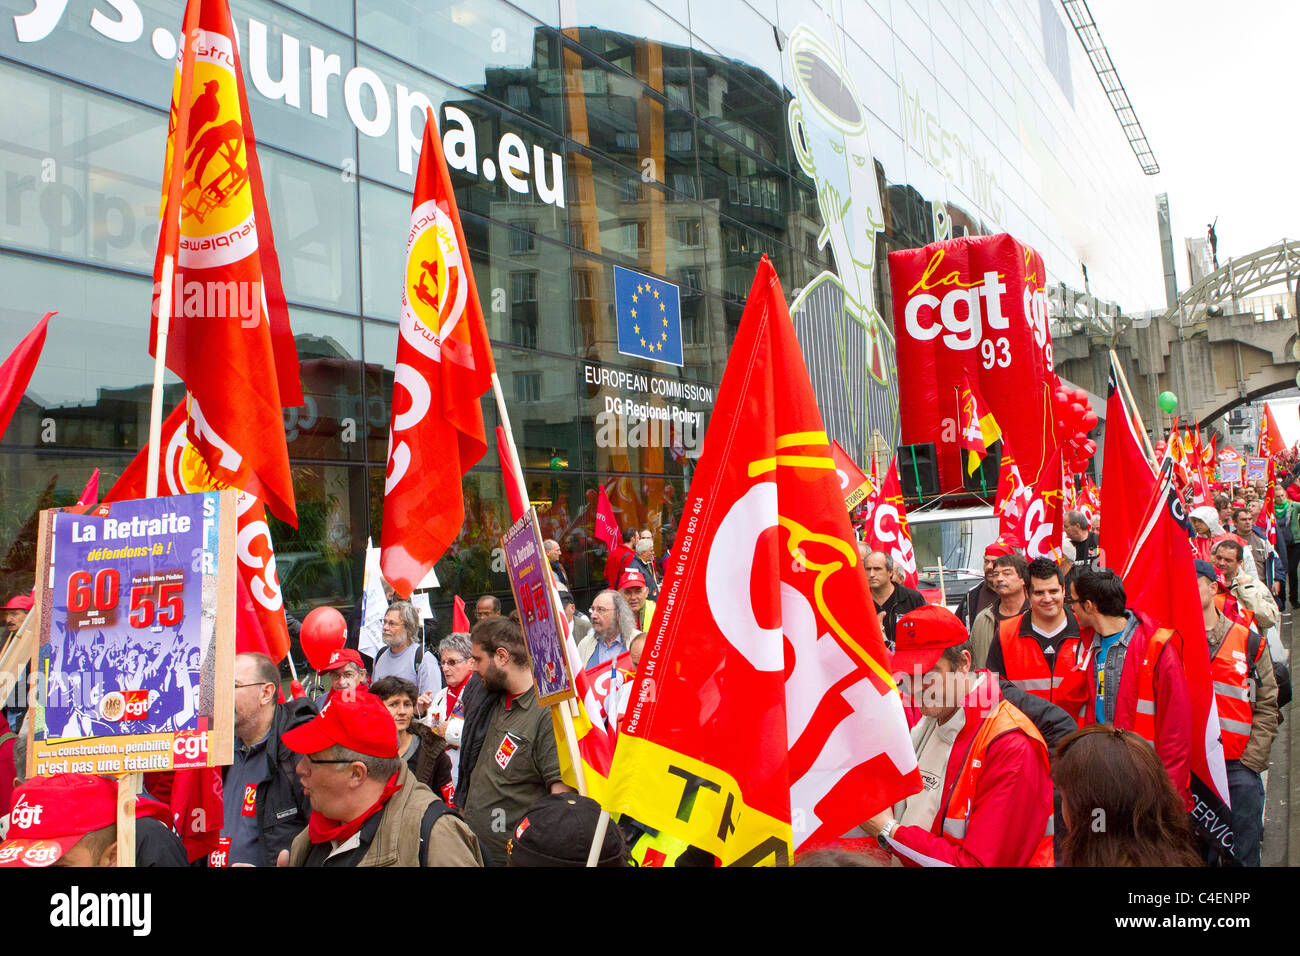 Los sindicatos de transporte marcha de protesta de la Comisión Europea en Bruselas, Bélgica Foto de stock